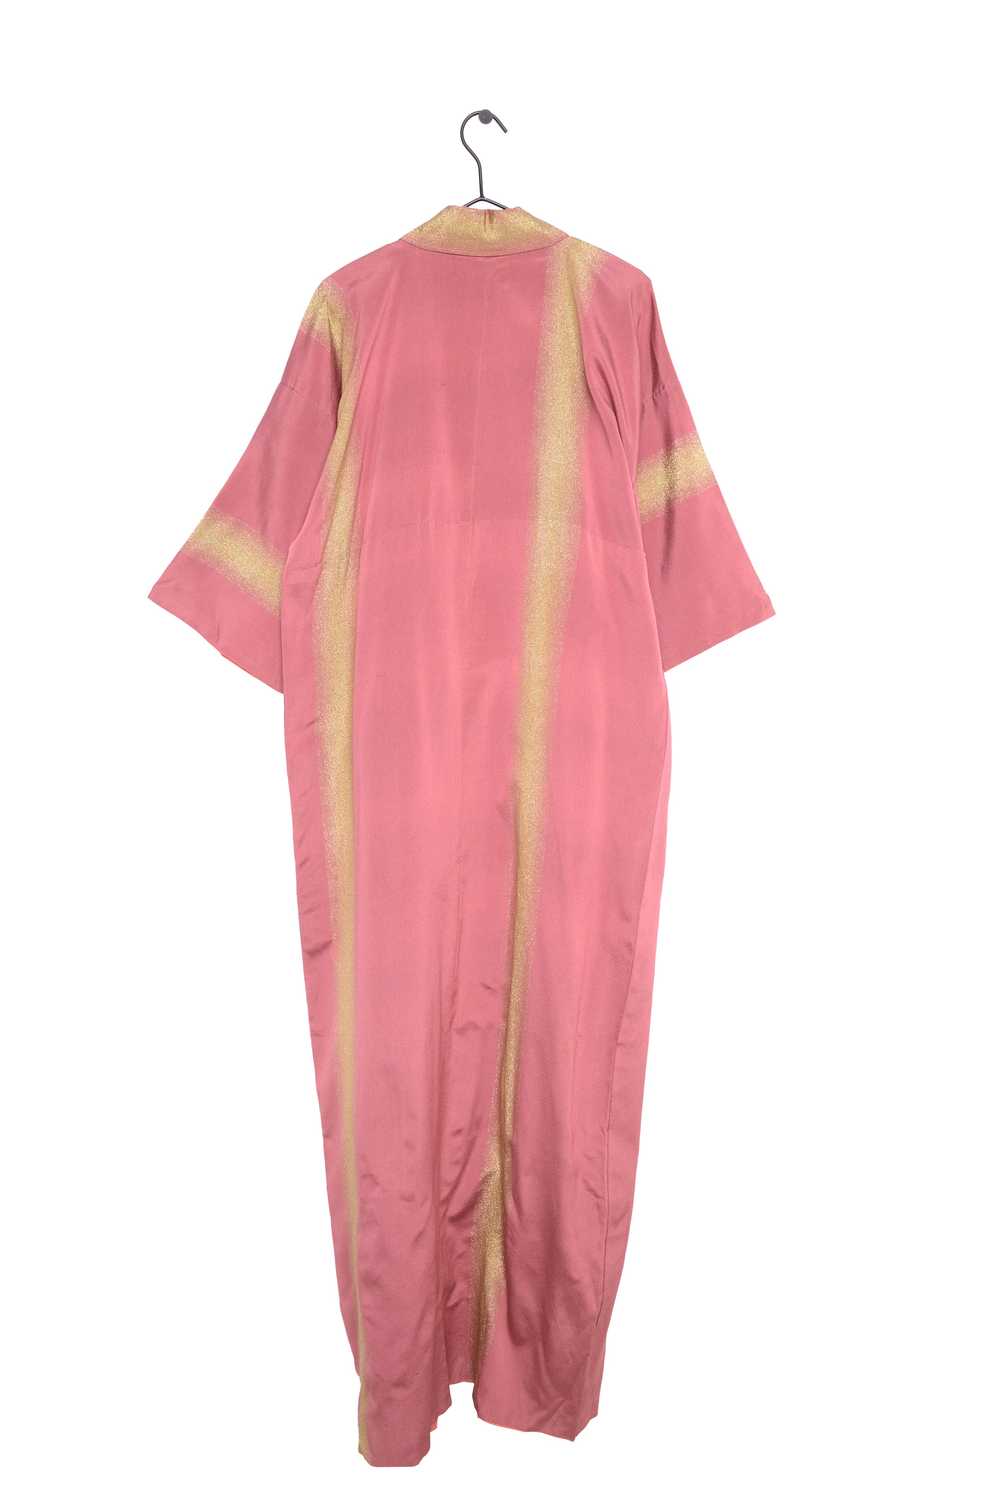 1970s Gold and Pink Kimono - image 2